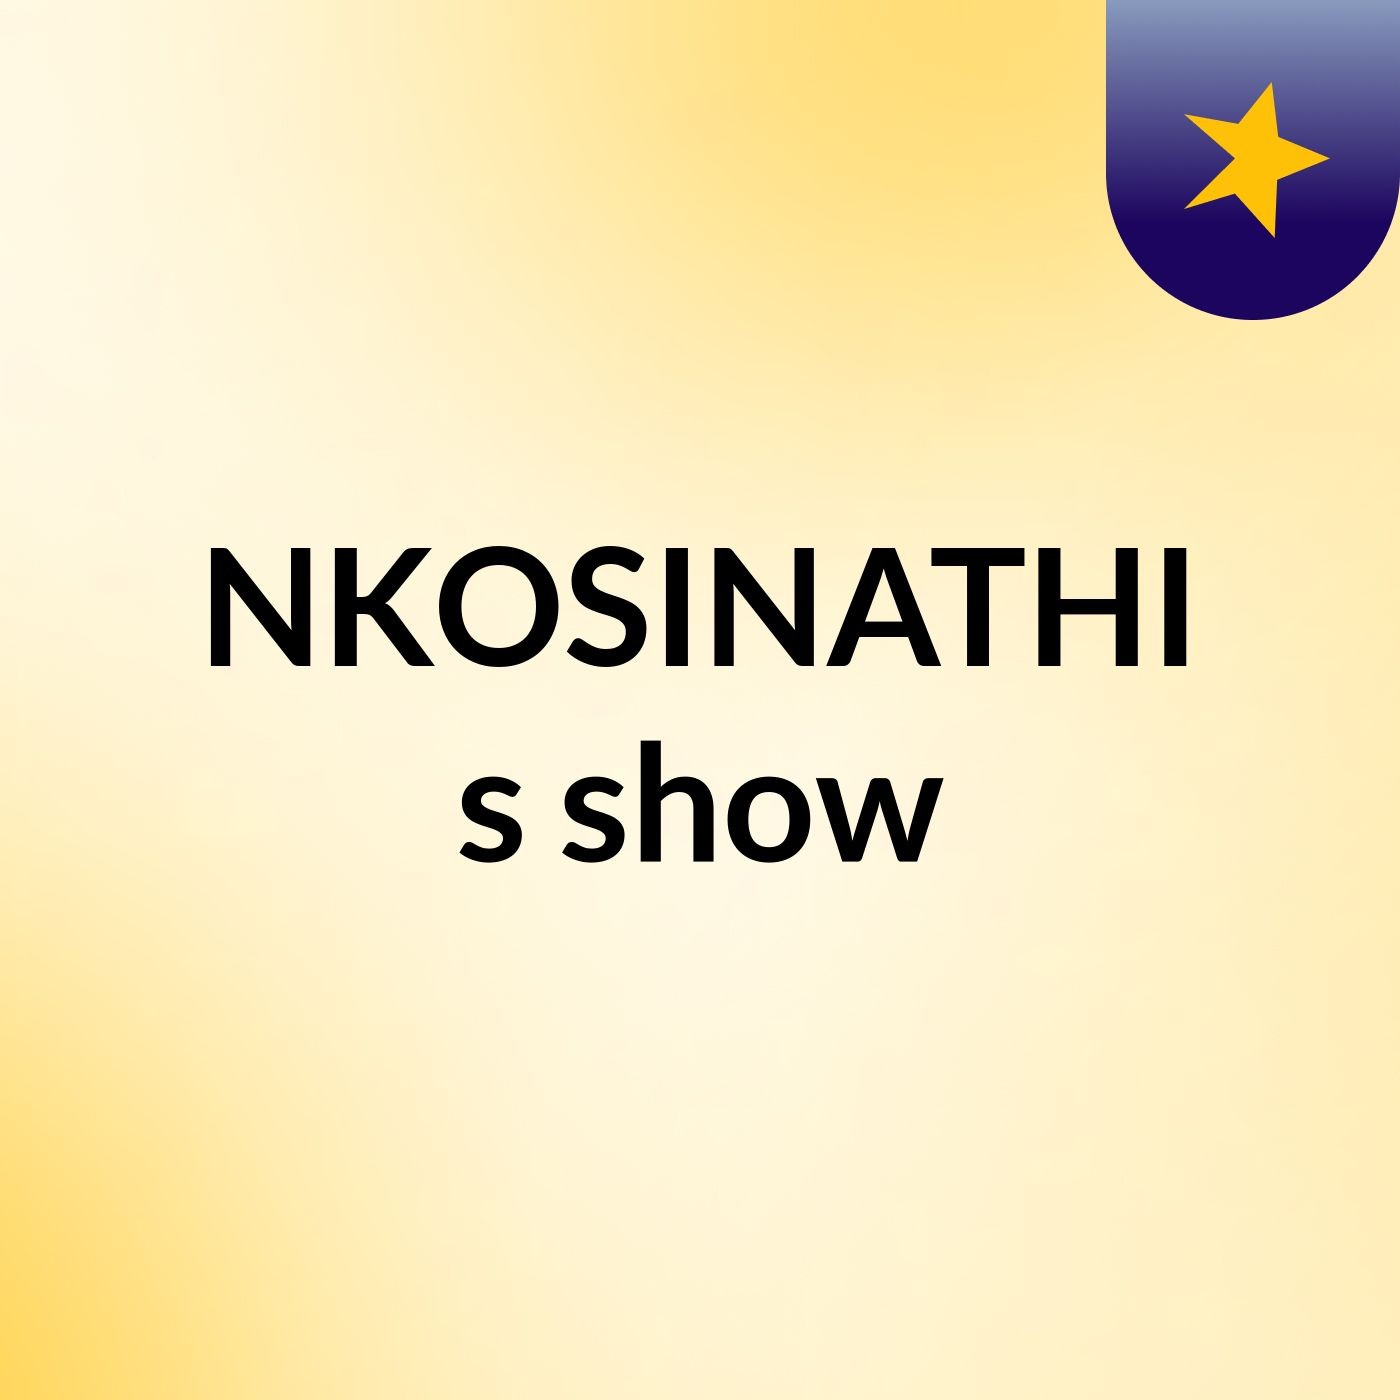 NKOSINATHI's show